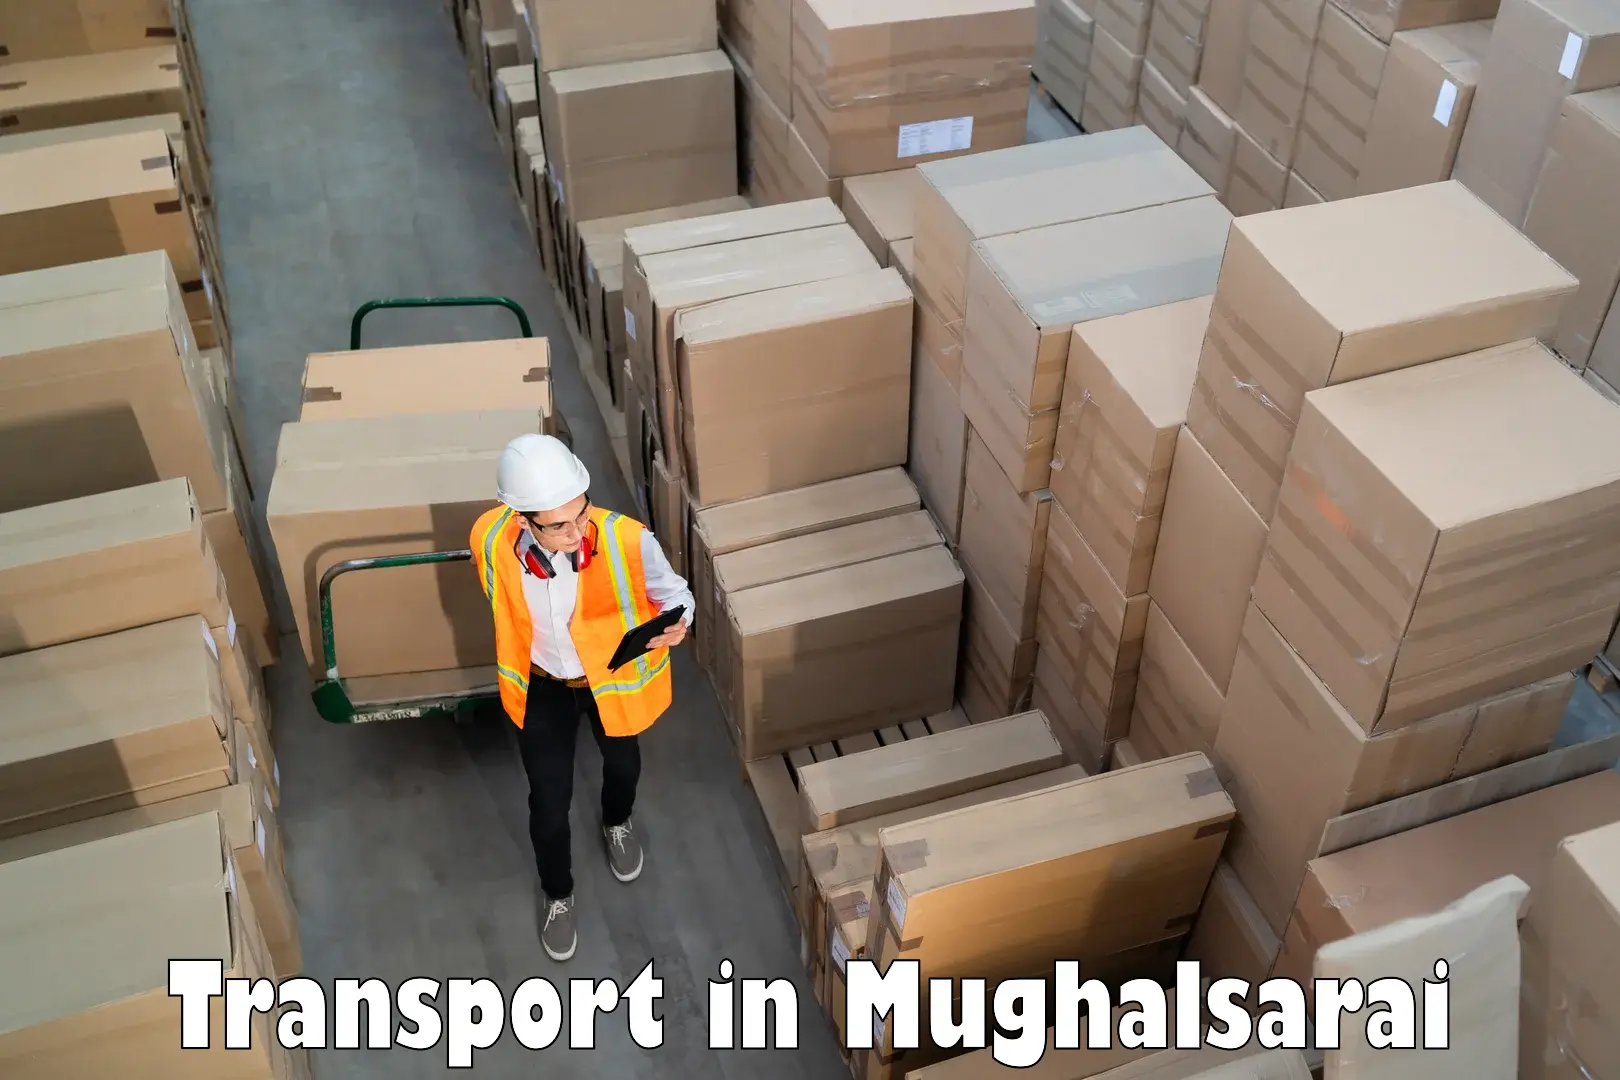 Interstate transport services in Mughalsarai